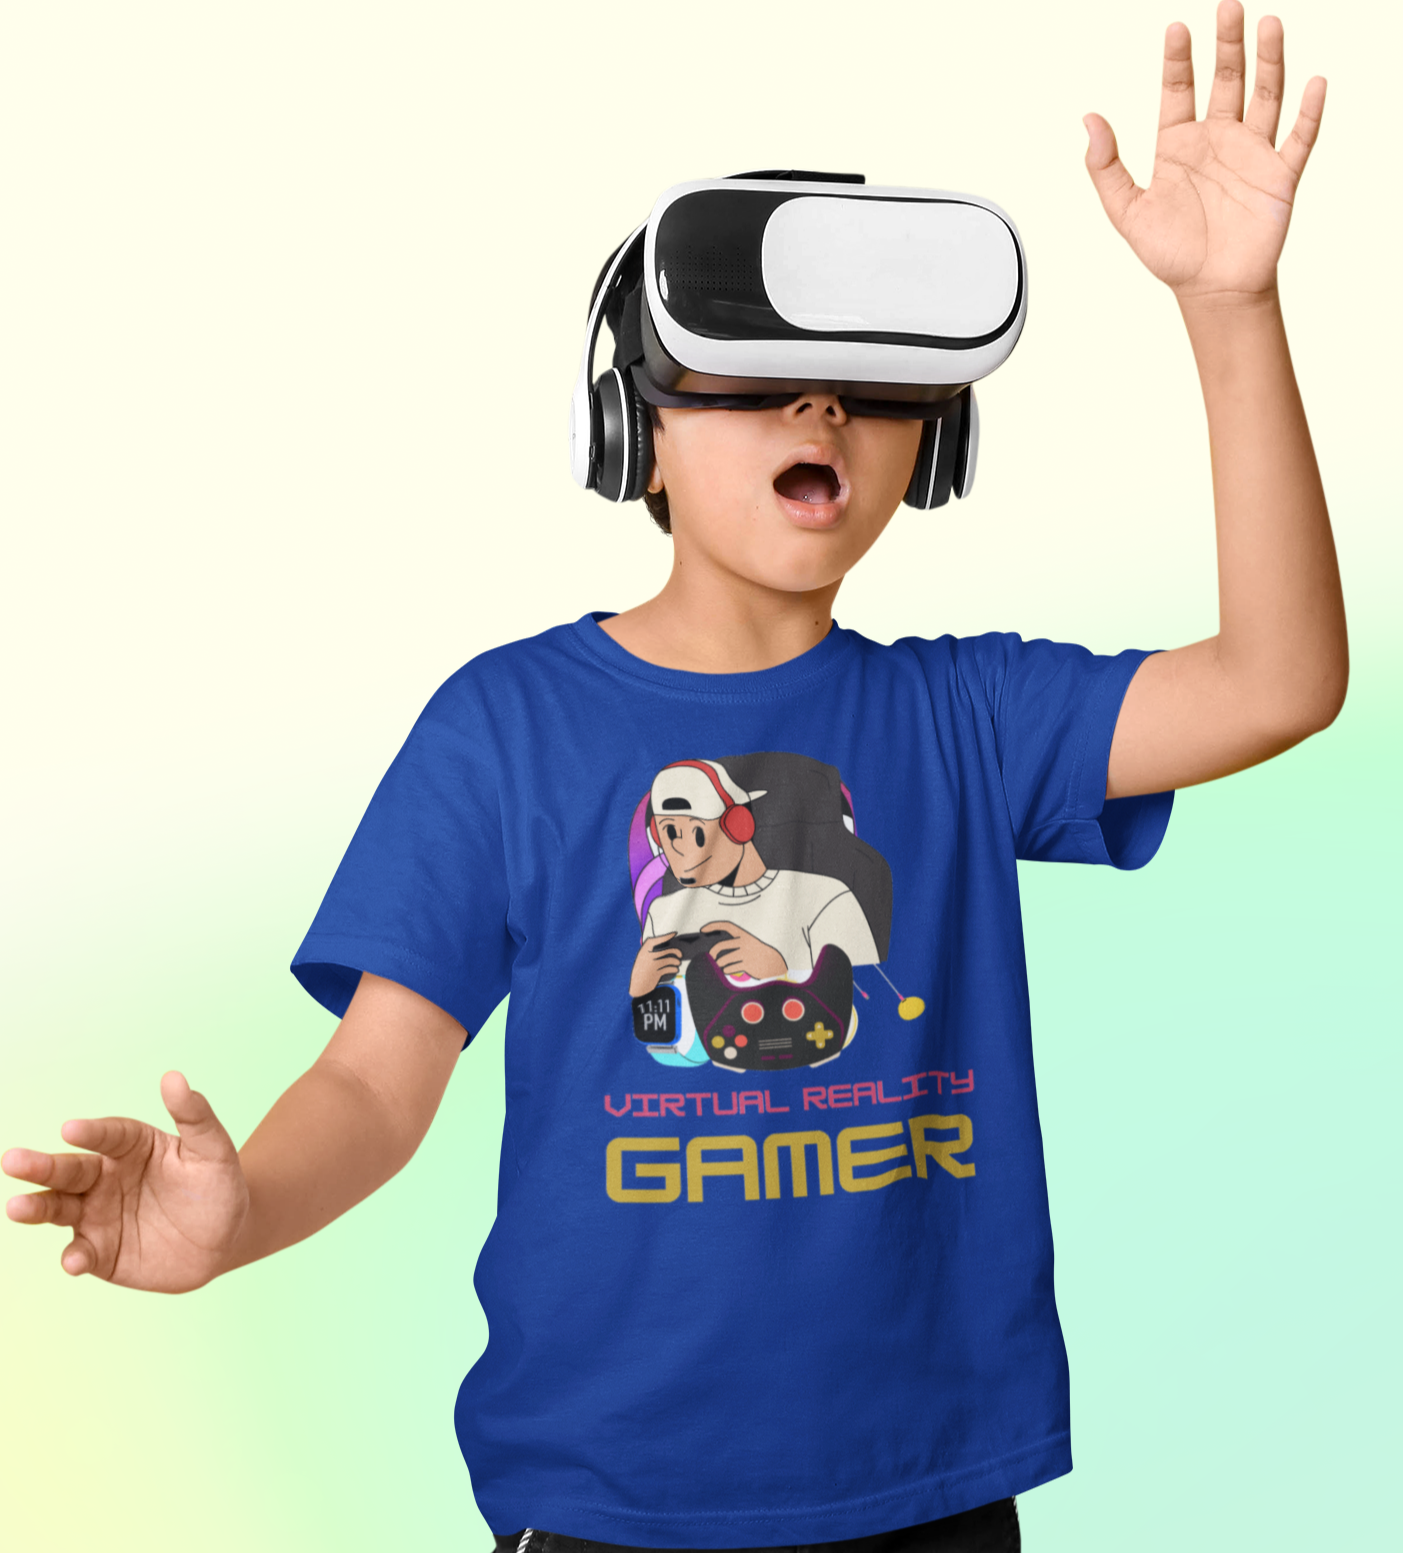 VR Gamer T-shirt for Kids Royal Blue